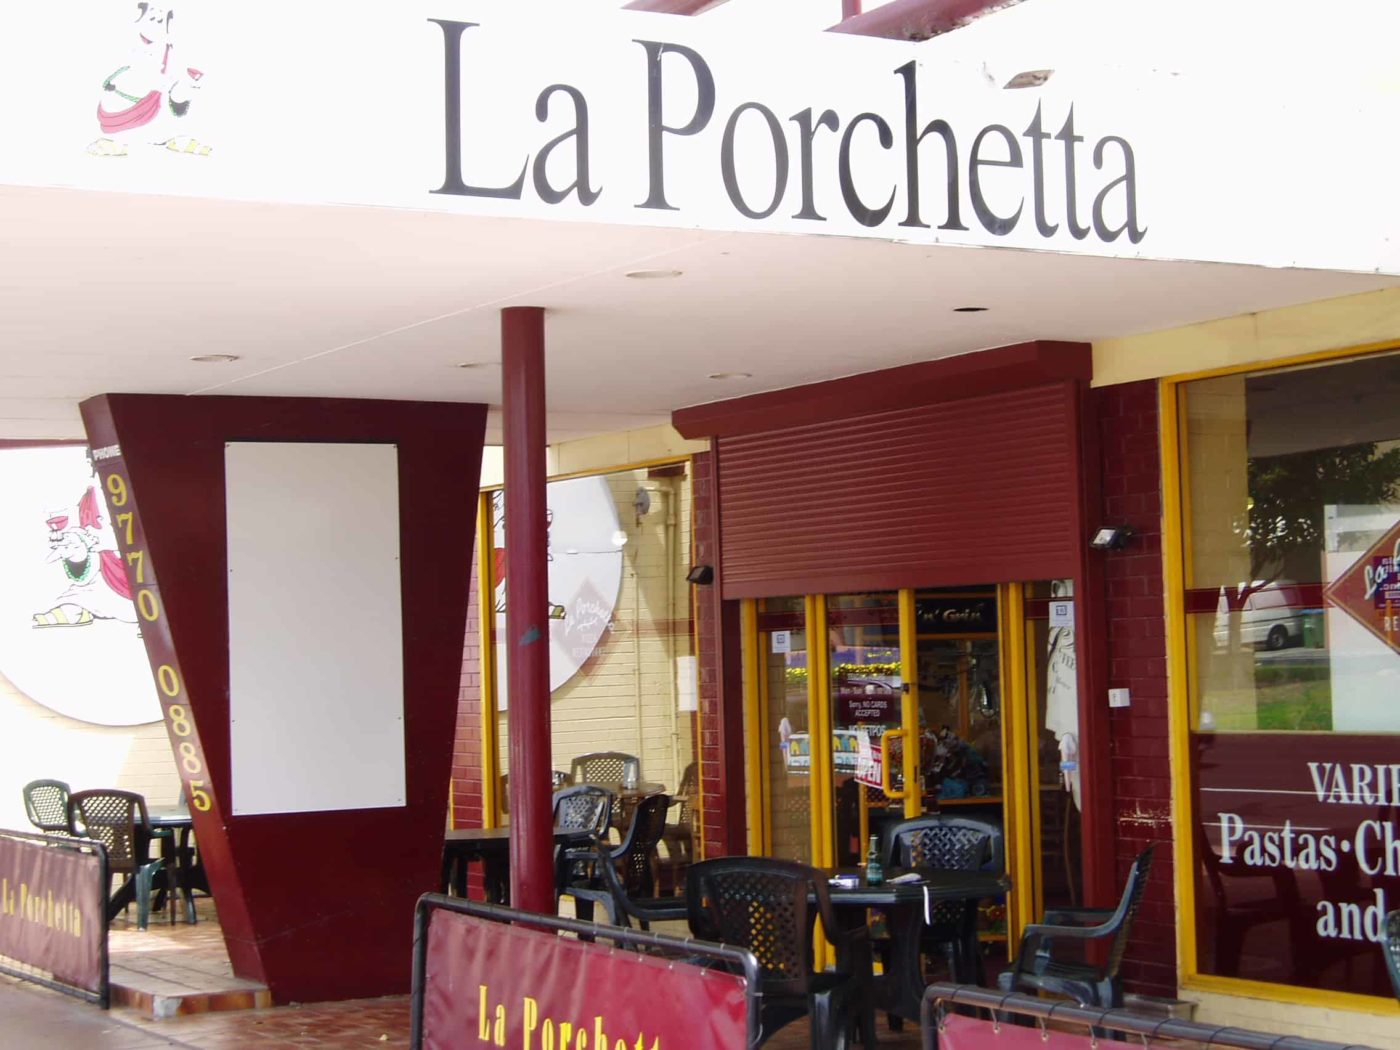 La-Porchetta-e1565056554535